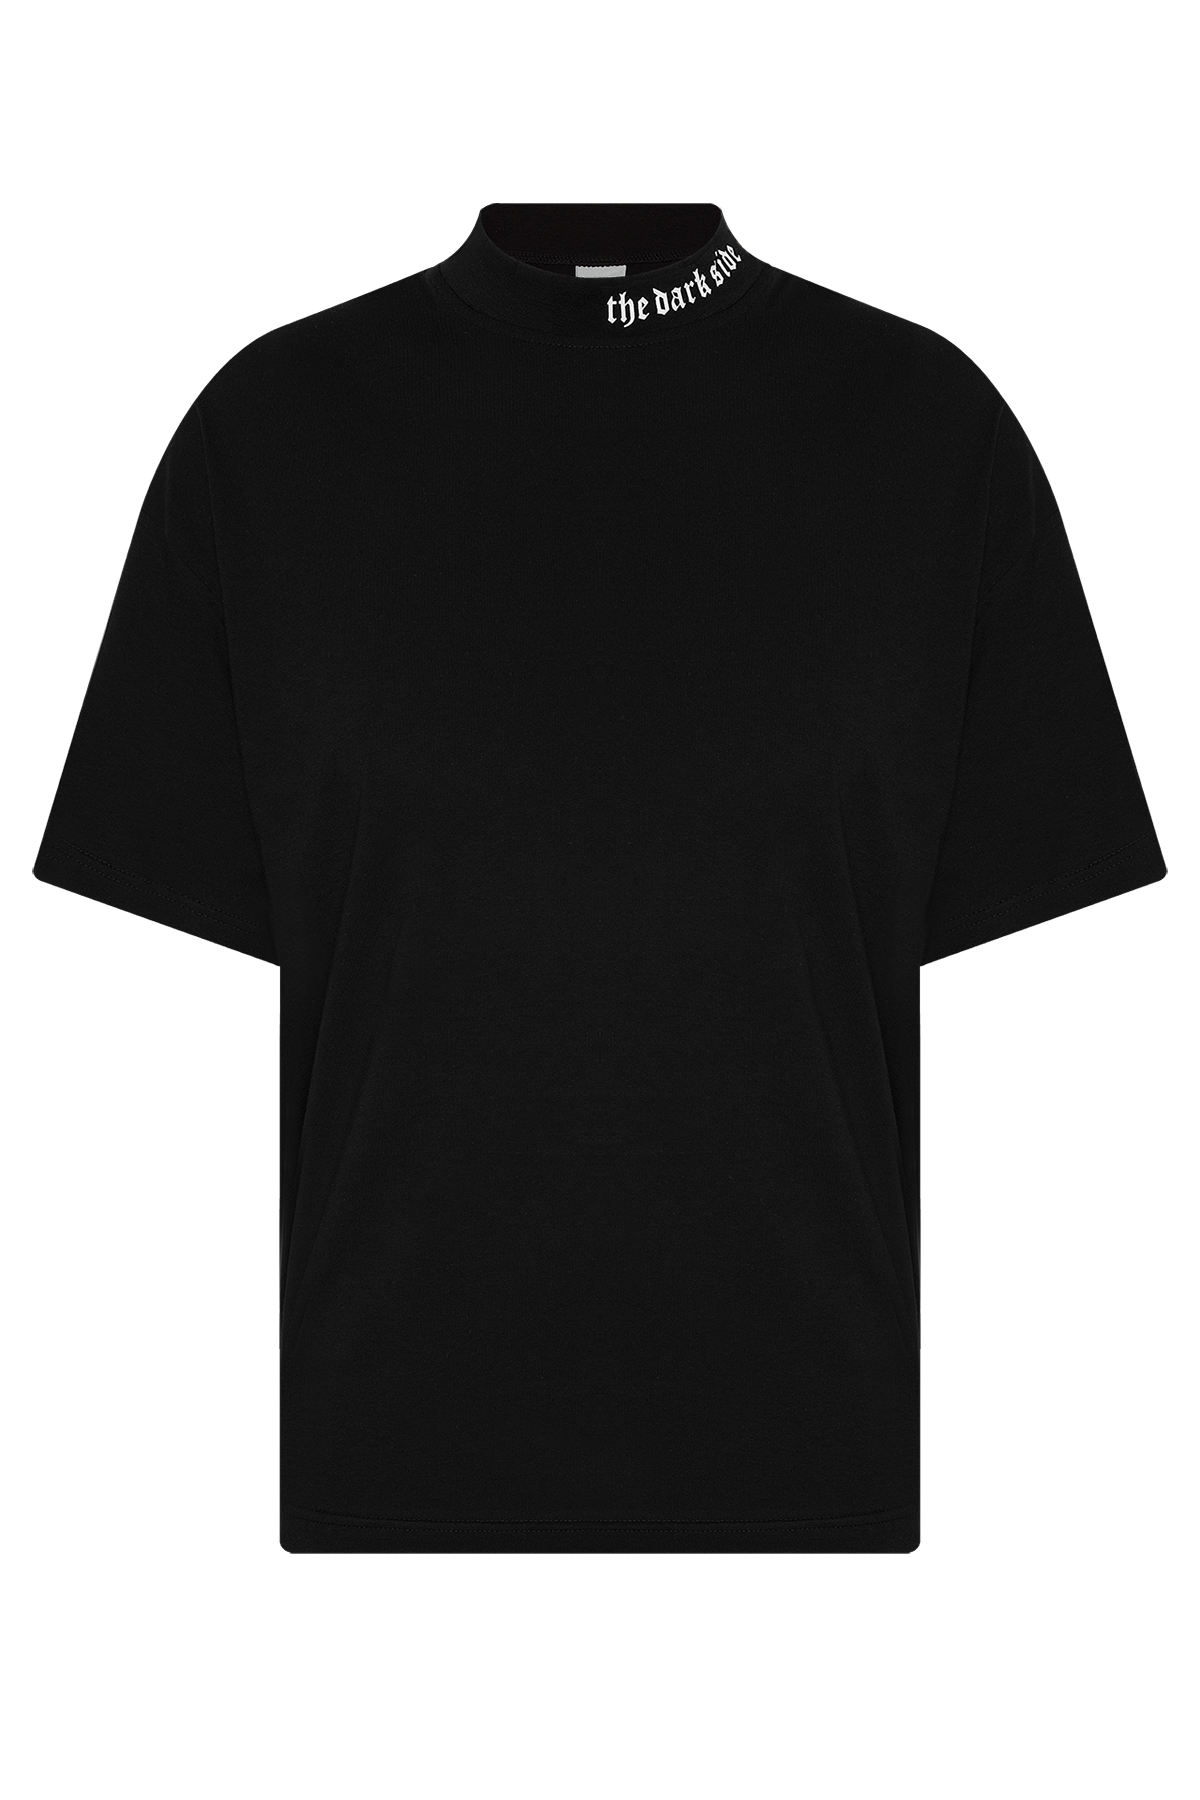 Siyah Ribanalı & Yazı Detaylı Oversize T-Shirt 2YXE2-45987-02